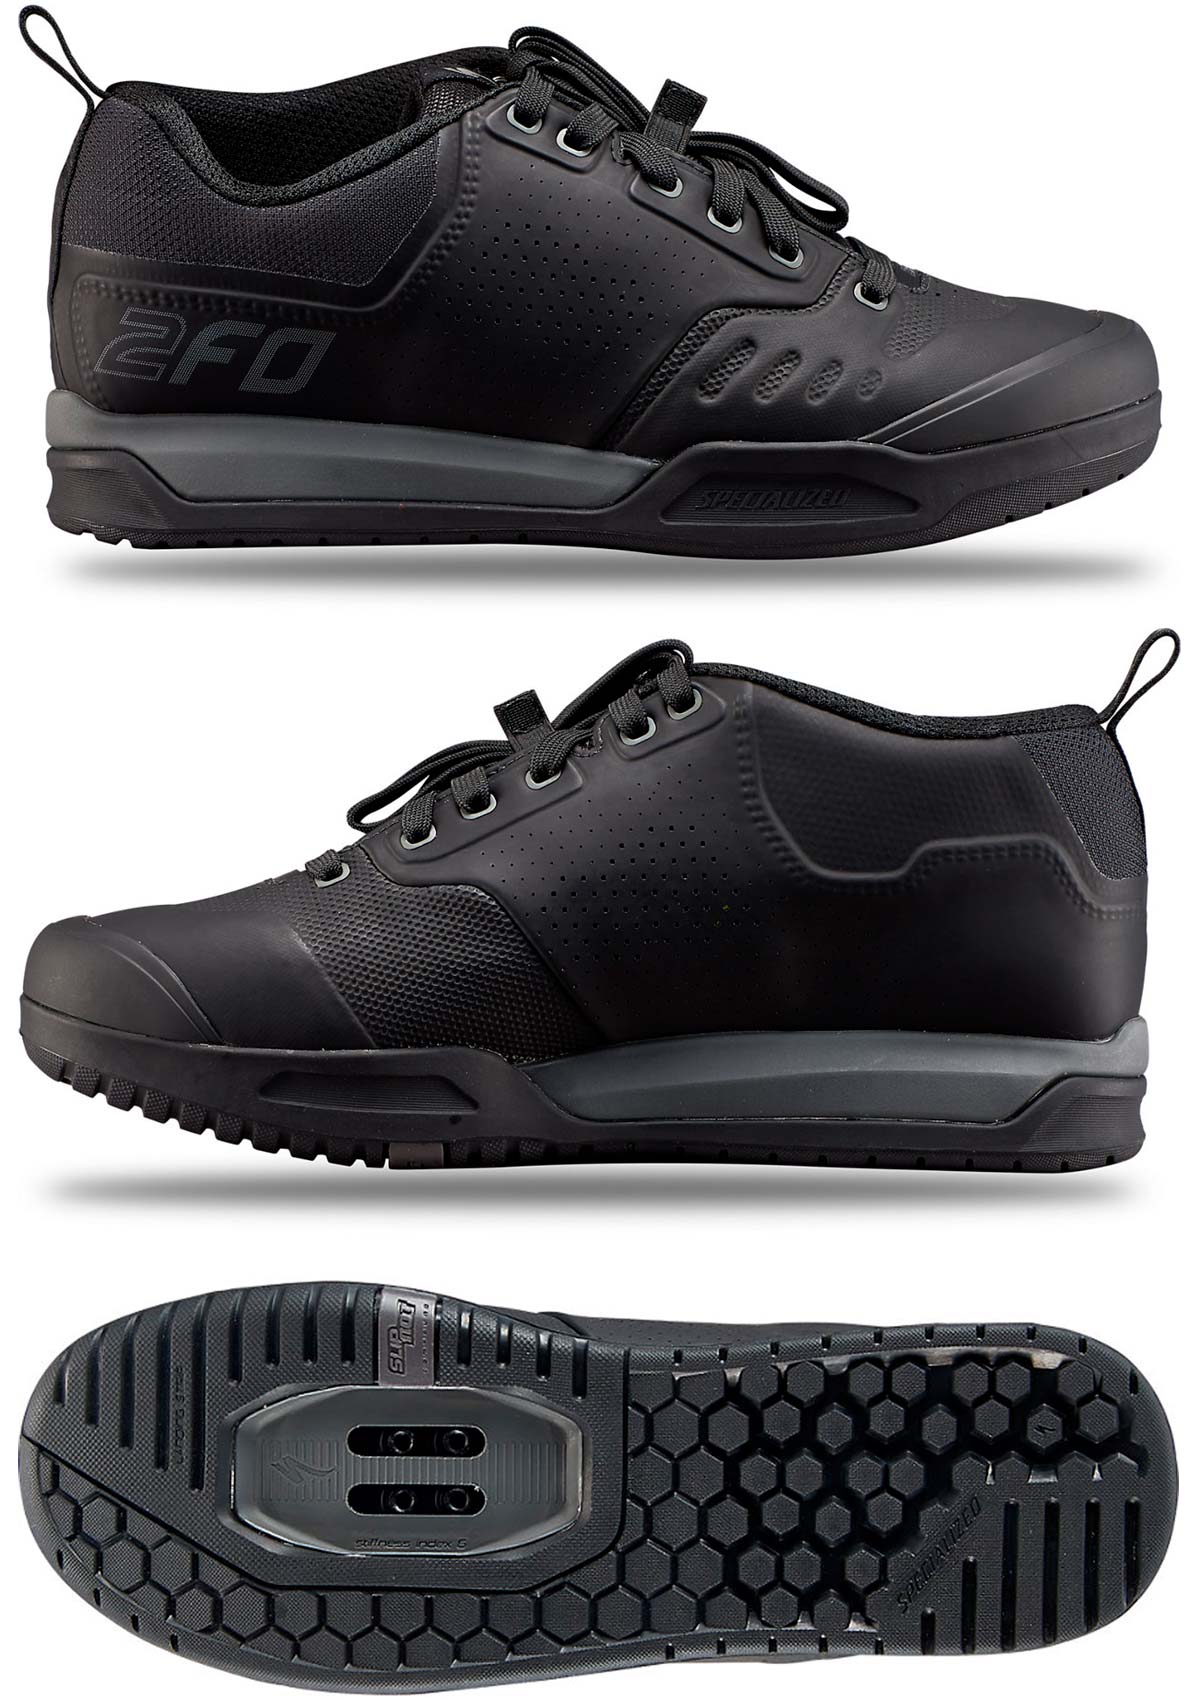 En TodoMountainBike: Specialized 2FO Clip 2.0, las zapatillas de Descenso que usan Loïc Bruni y Finn Iles